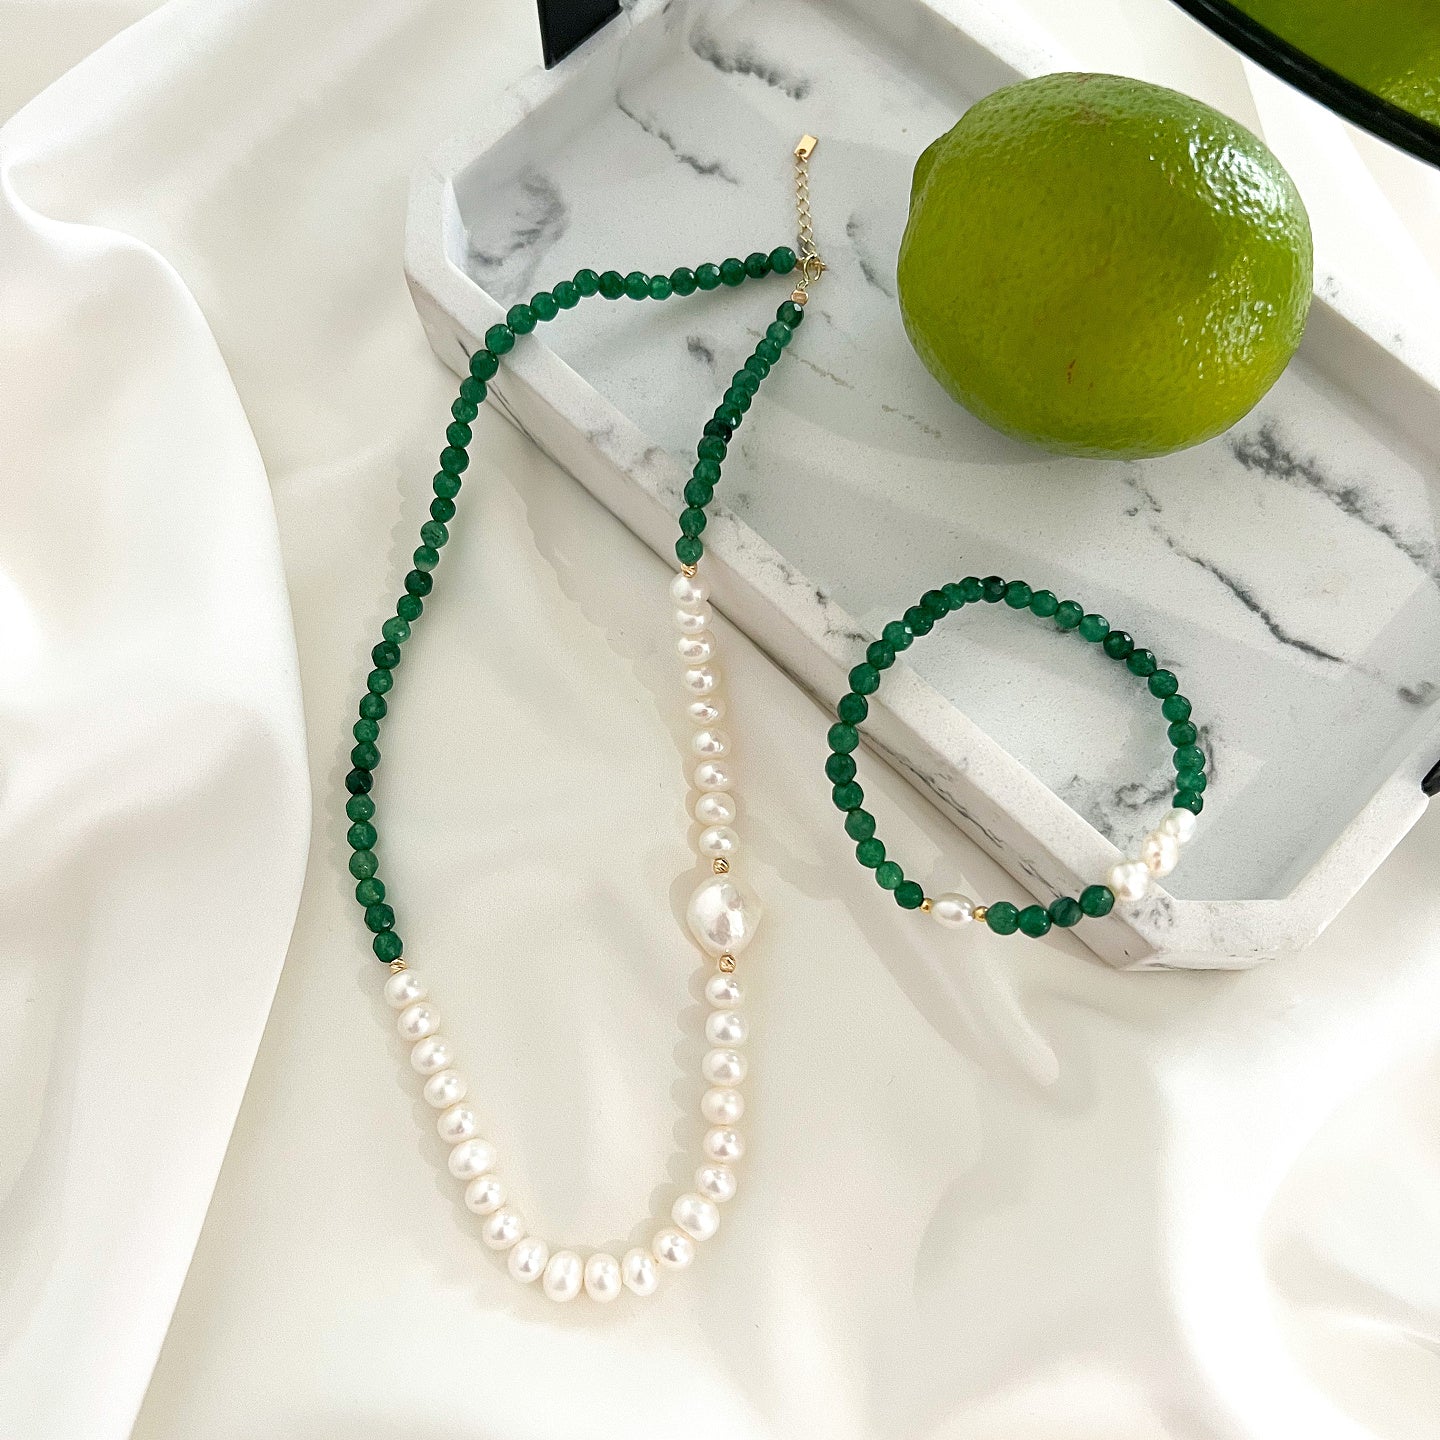 Bratara argint cu perle si agat verde smarald Green Spirit - placata aur galben 18K